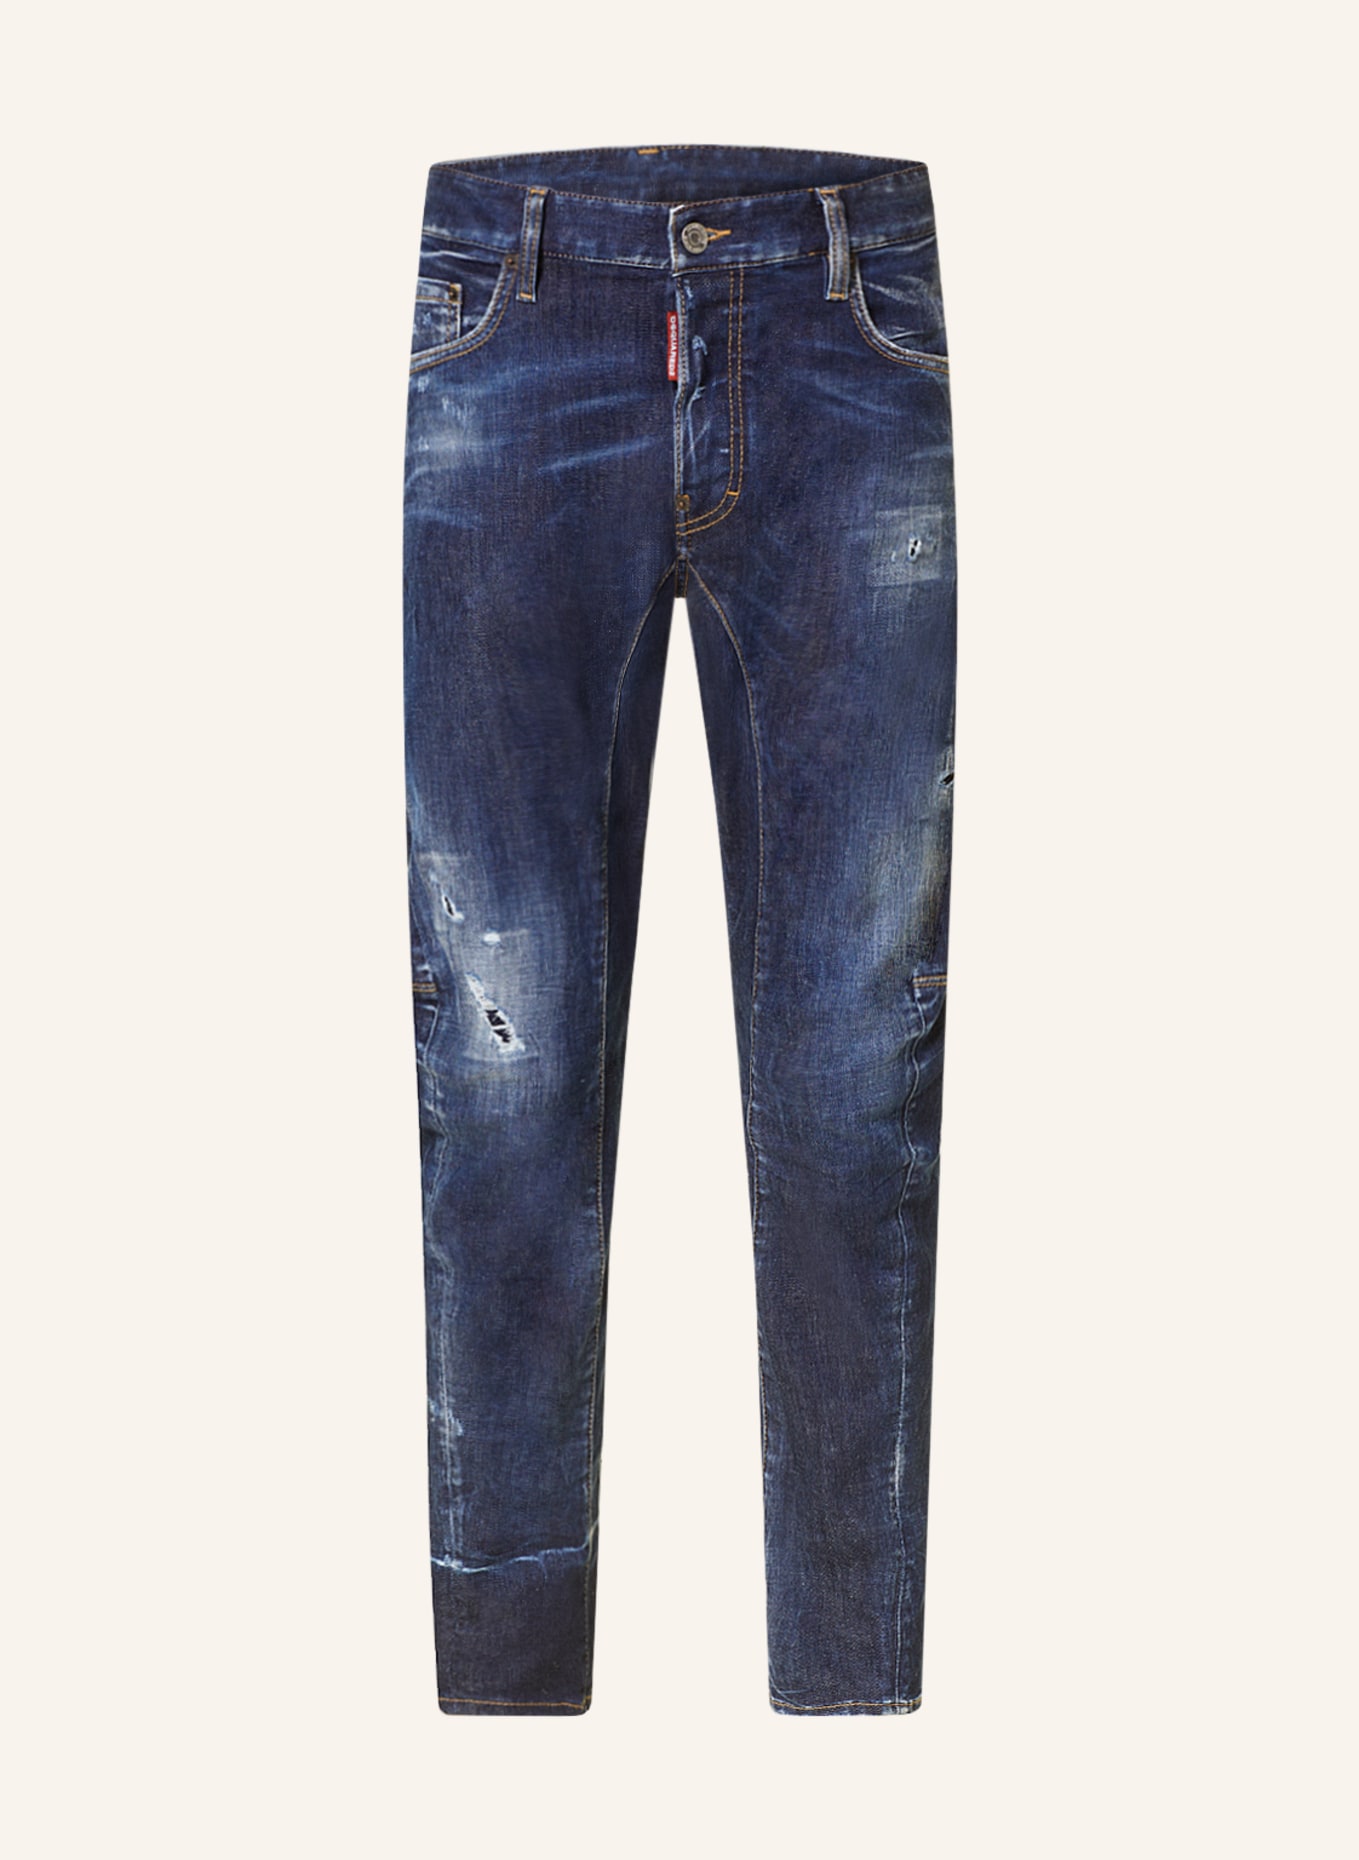 DSQUARED2 Jeans TIDY BIKER Extra Slim Fit, Farbe: 470 NAVY BLUE (Bild 1)